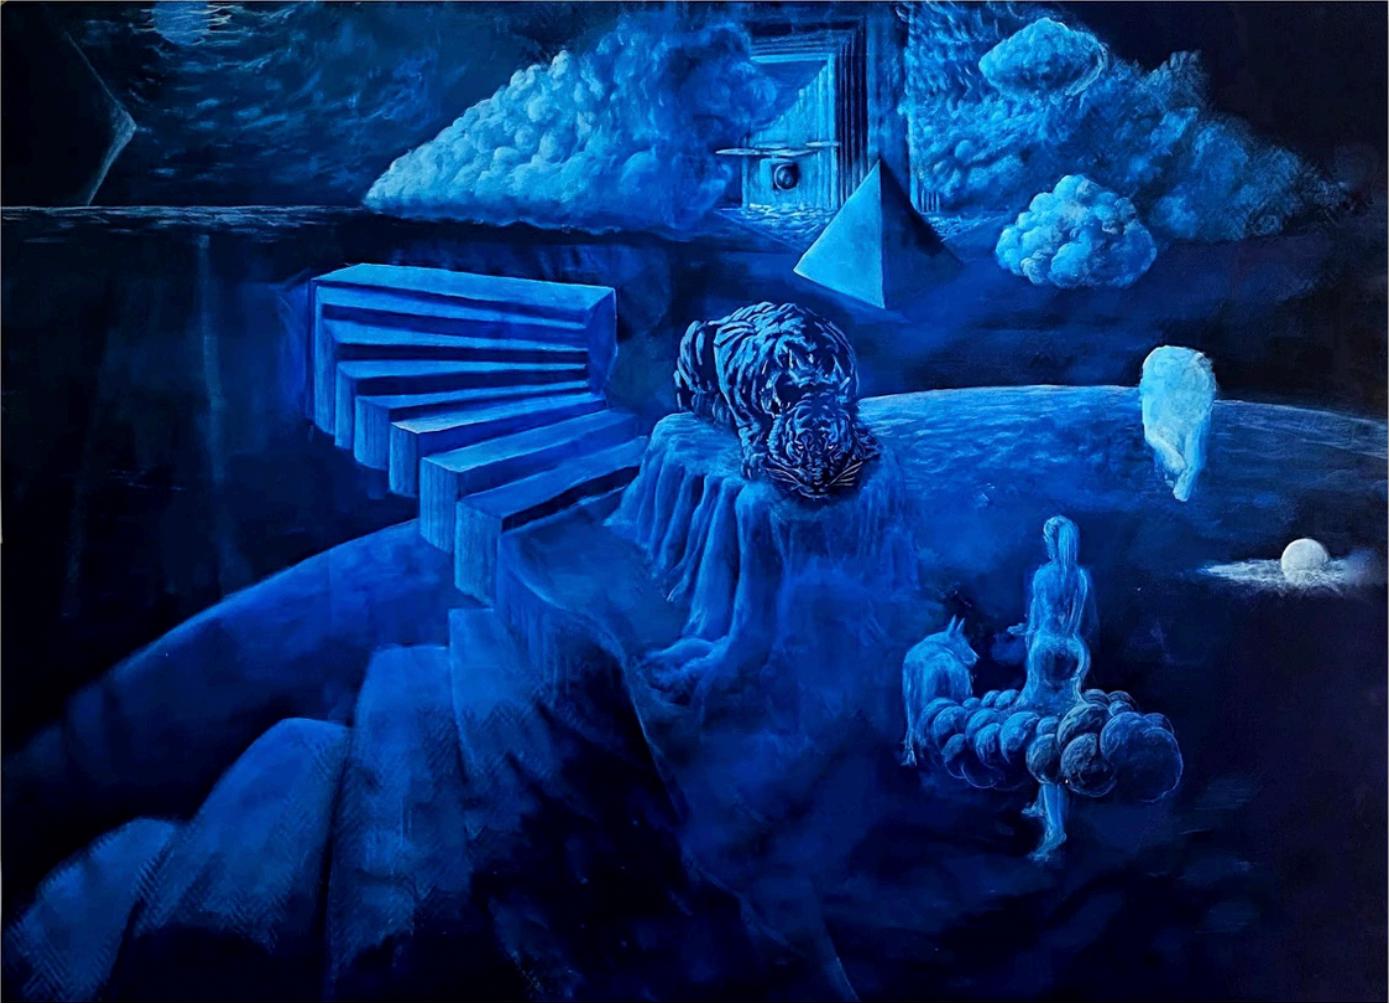 Le Secret du Sphinx - Painting by Arthur Platel